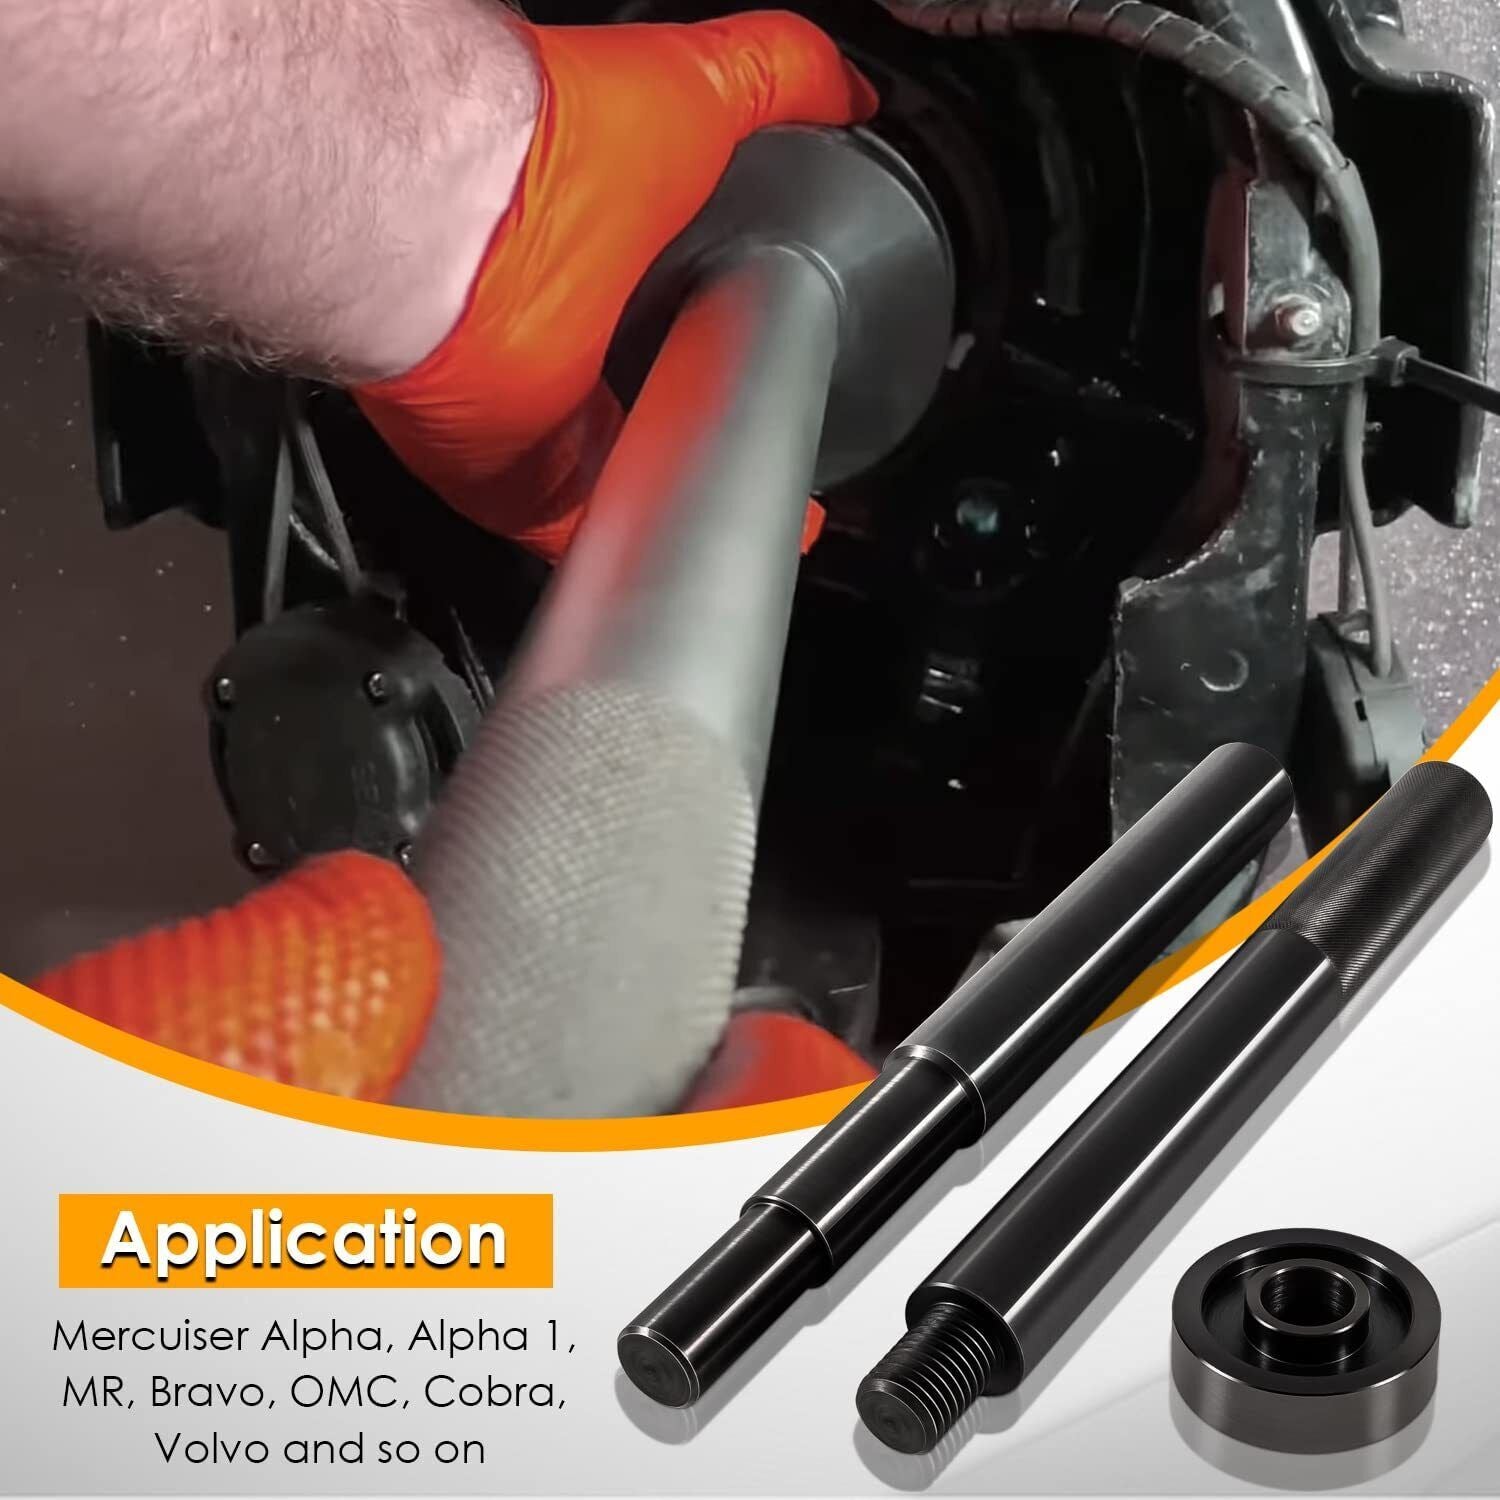 For Mercruiser Alpha Bravo OMC & Volvo Gimbal Bearing Alignment Install Tool Kit